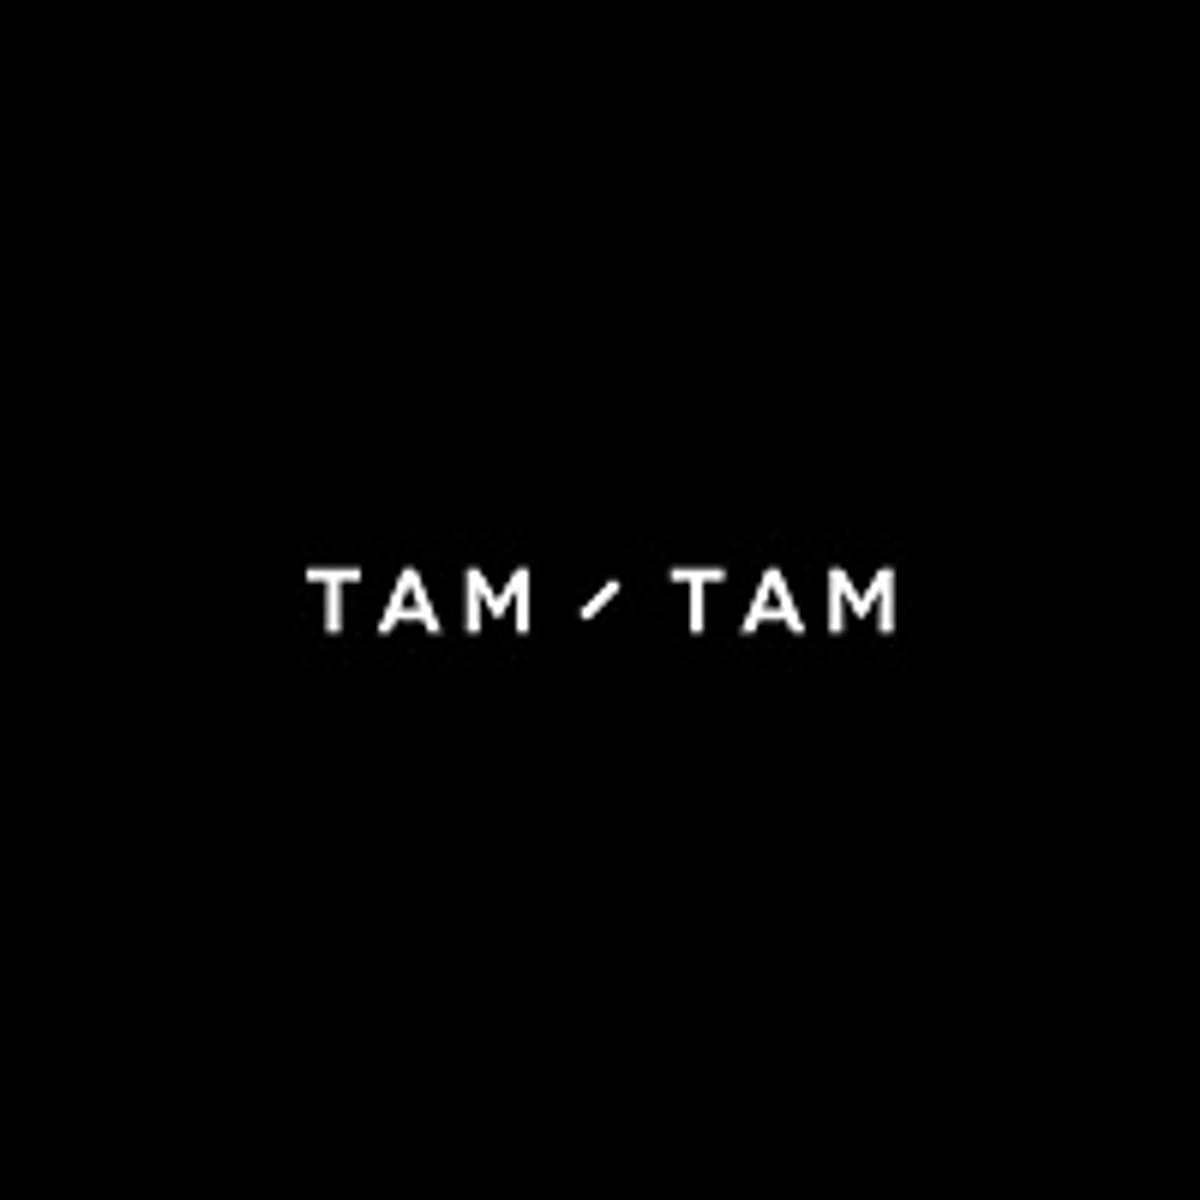 TamTam wordt partner voor realisatie Eneco-app image